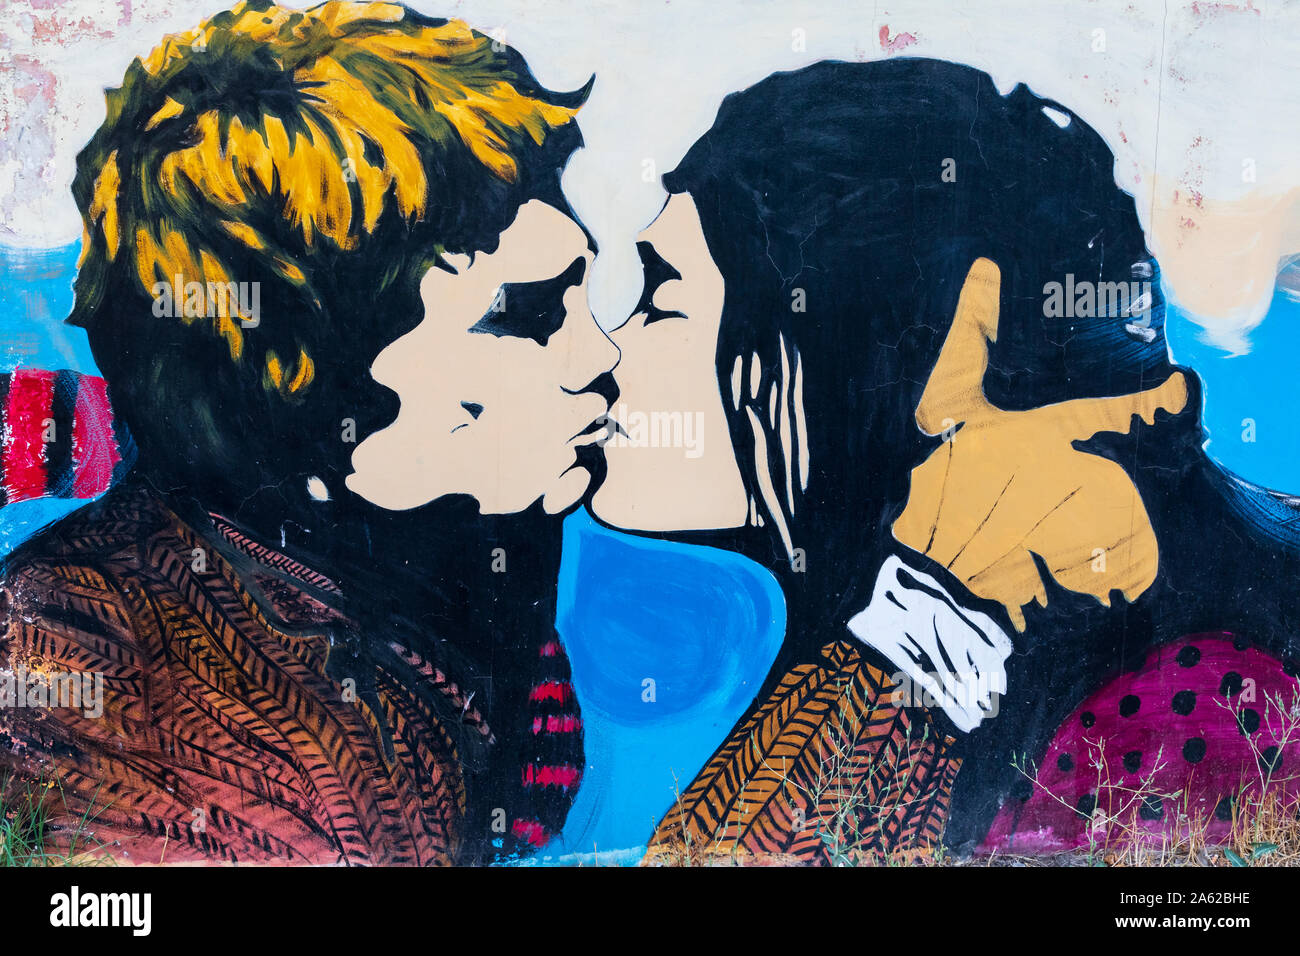 En Yereván, Armenia. El 17 de agosto de 2018. Mural de dos jóvenes besándose. Foto de stock